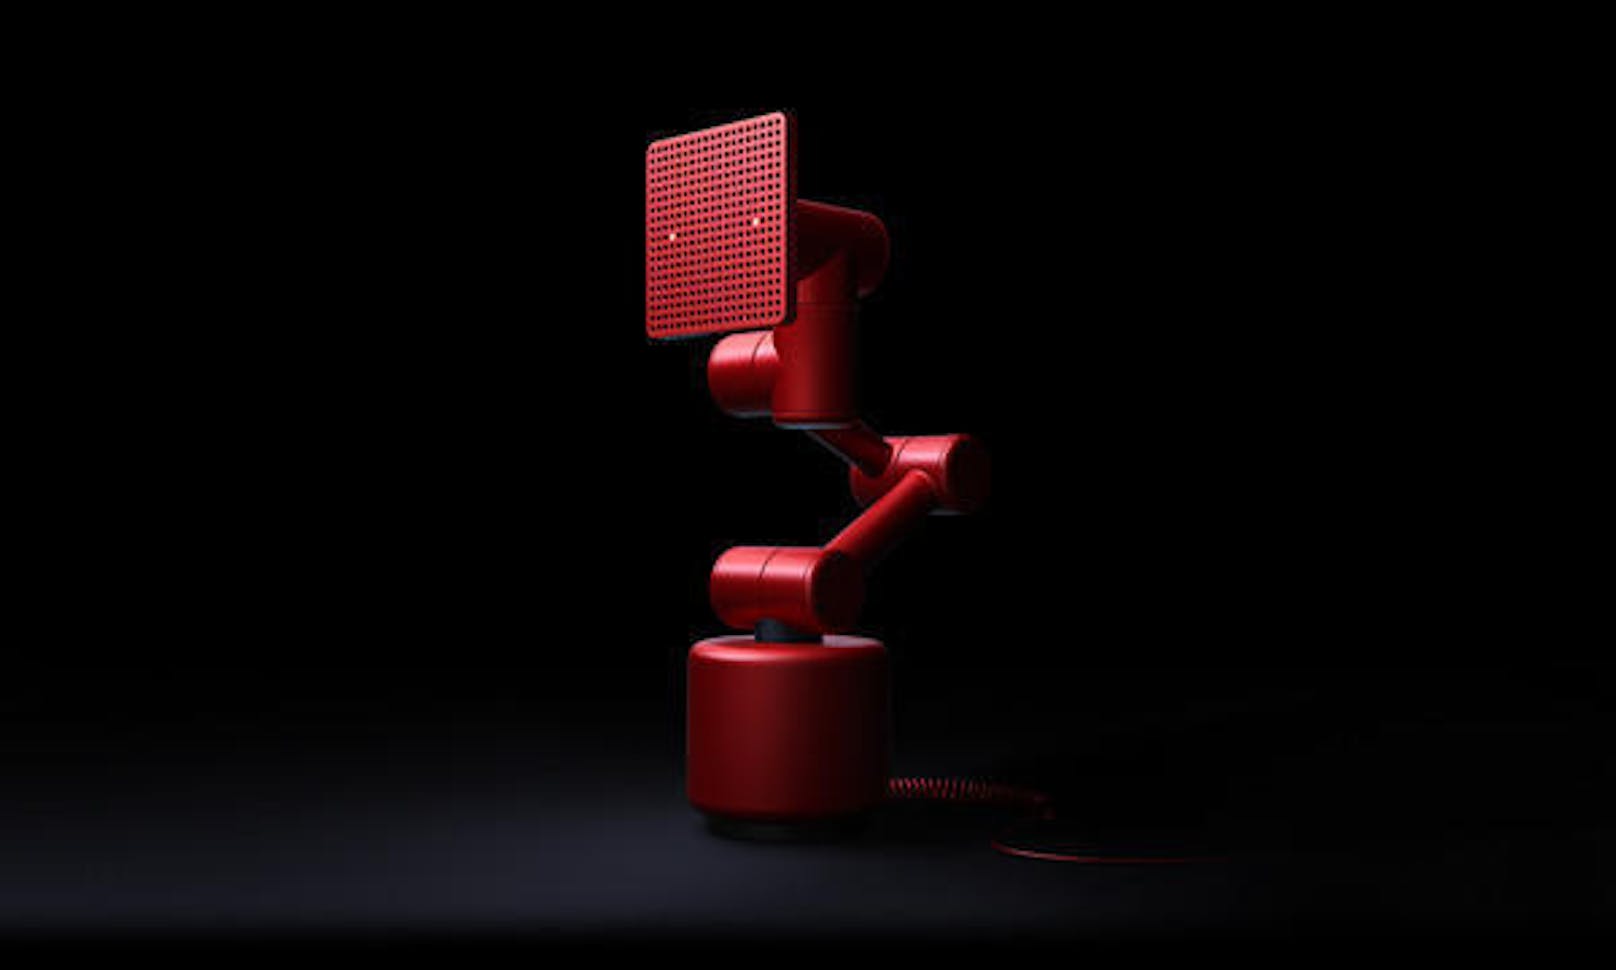 Abgefahrendes Design: Diesen smarten Roboter-Lautsprecher Modell "R" bringt der chinesische IT-Gigant Baidu auf den Markt. Er hört auf die Sprachbefehle der Nutzer. Entworfen wurde er von der schwedischen Firma Teenage Engineering und Raven Tech. Letztere gehören seit Anfang 2017 zur Baidu-Gruppe. 